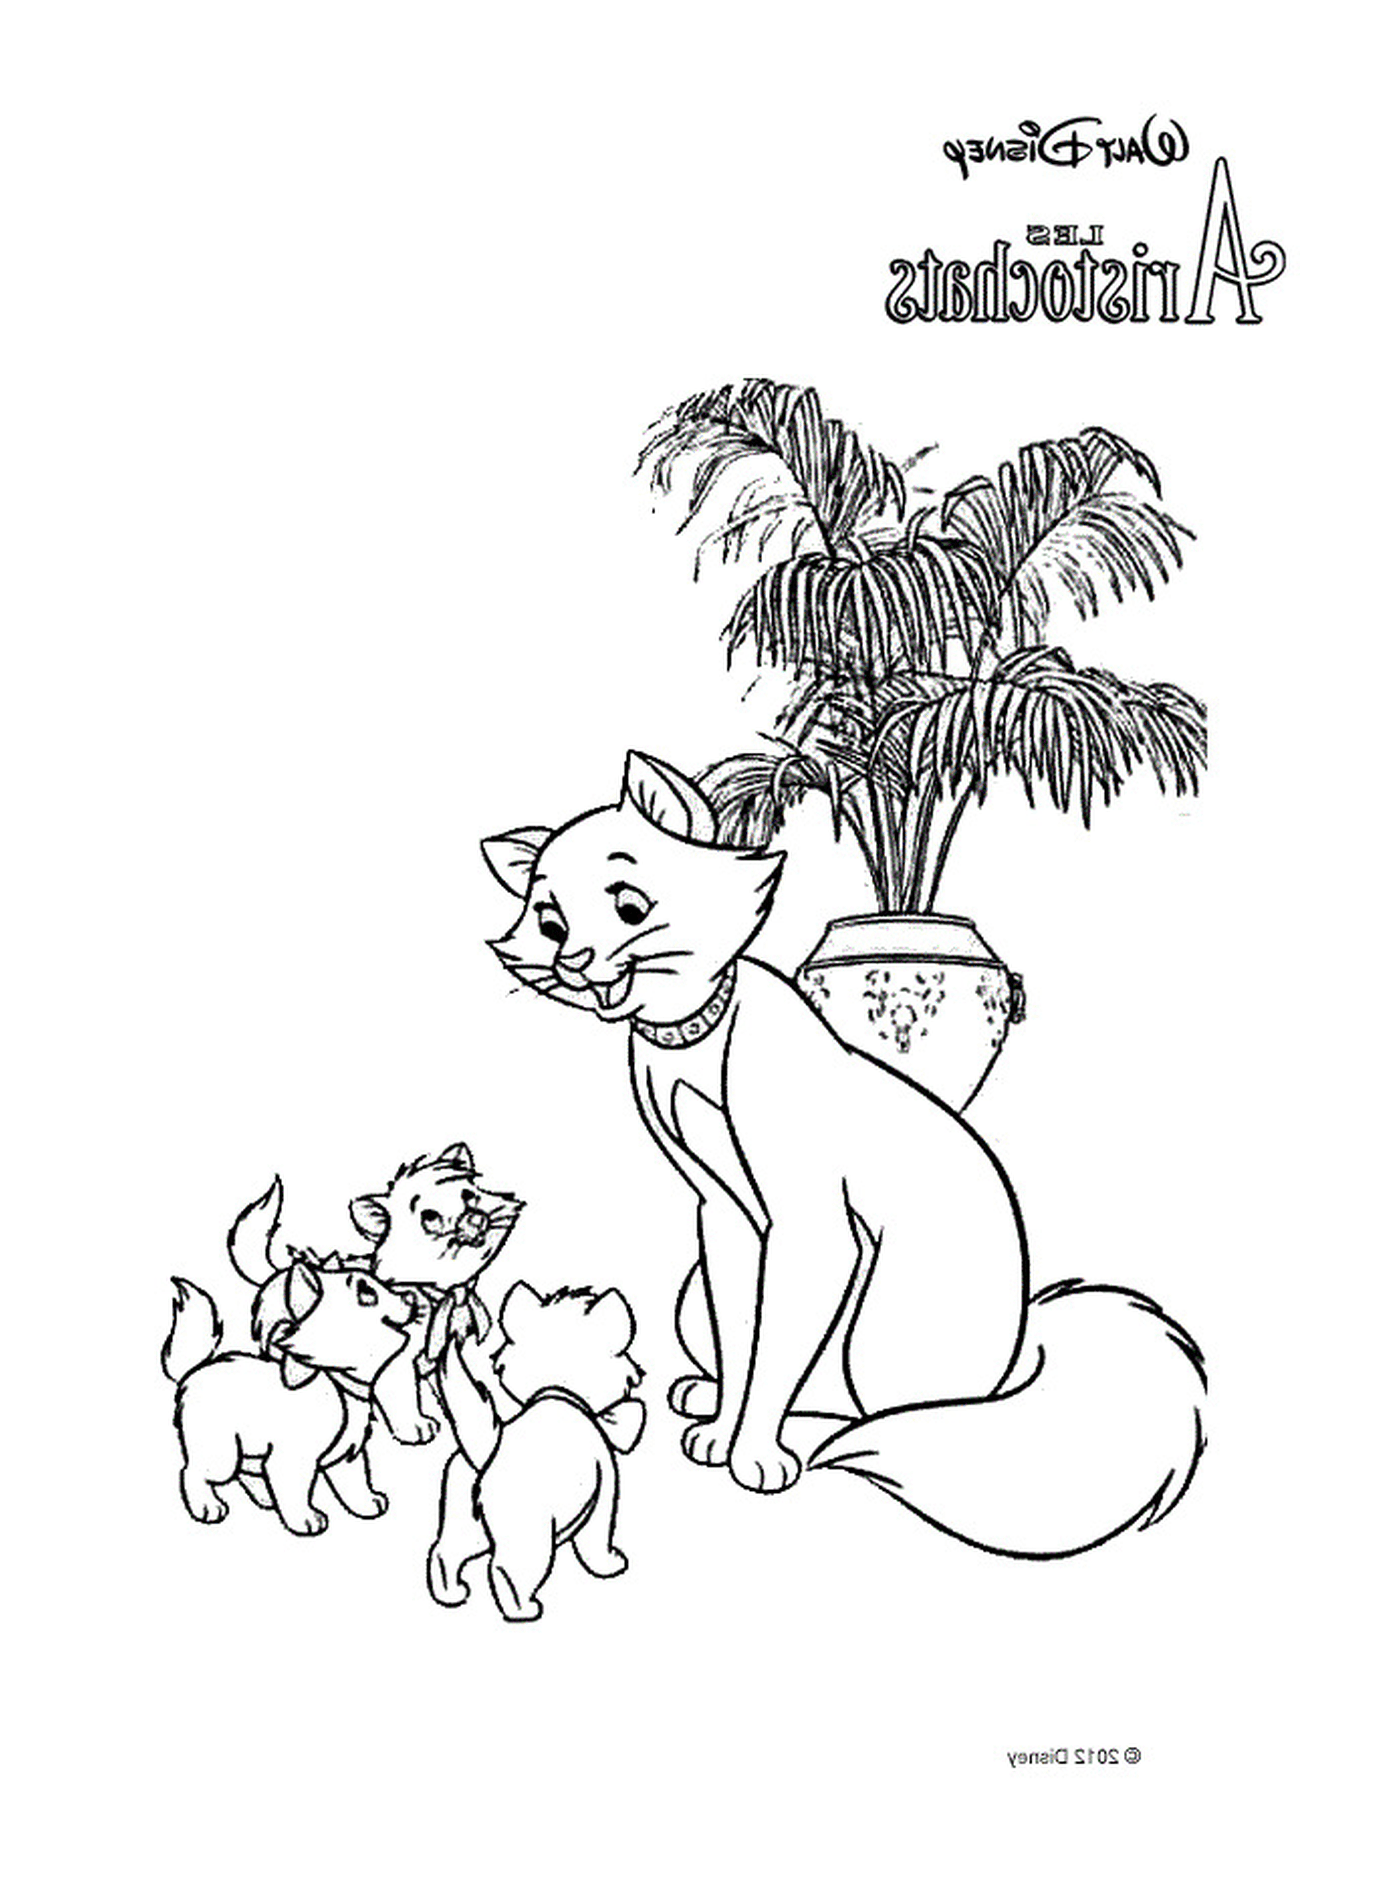  Взрослый кот и два маленьких котёнка перед пальмой в горшке 